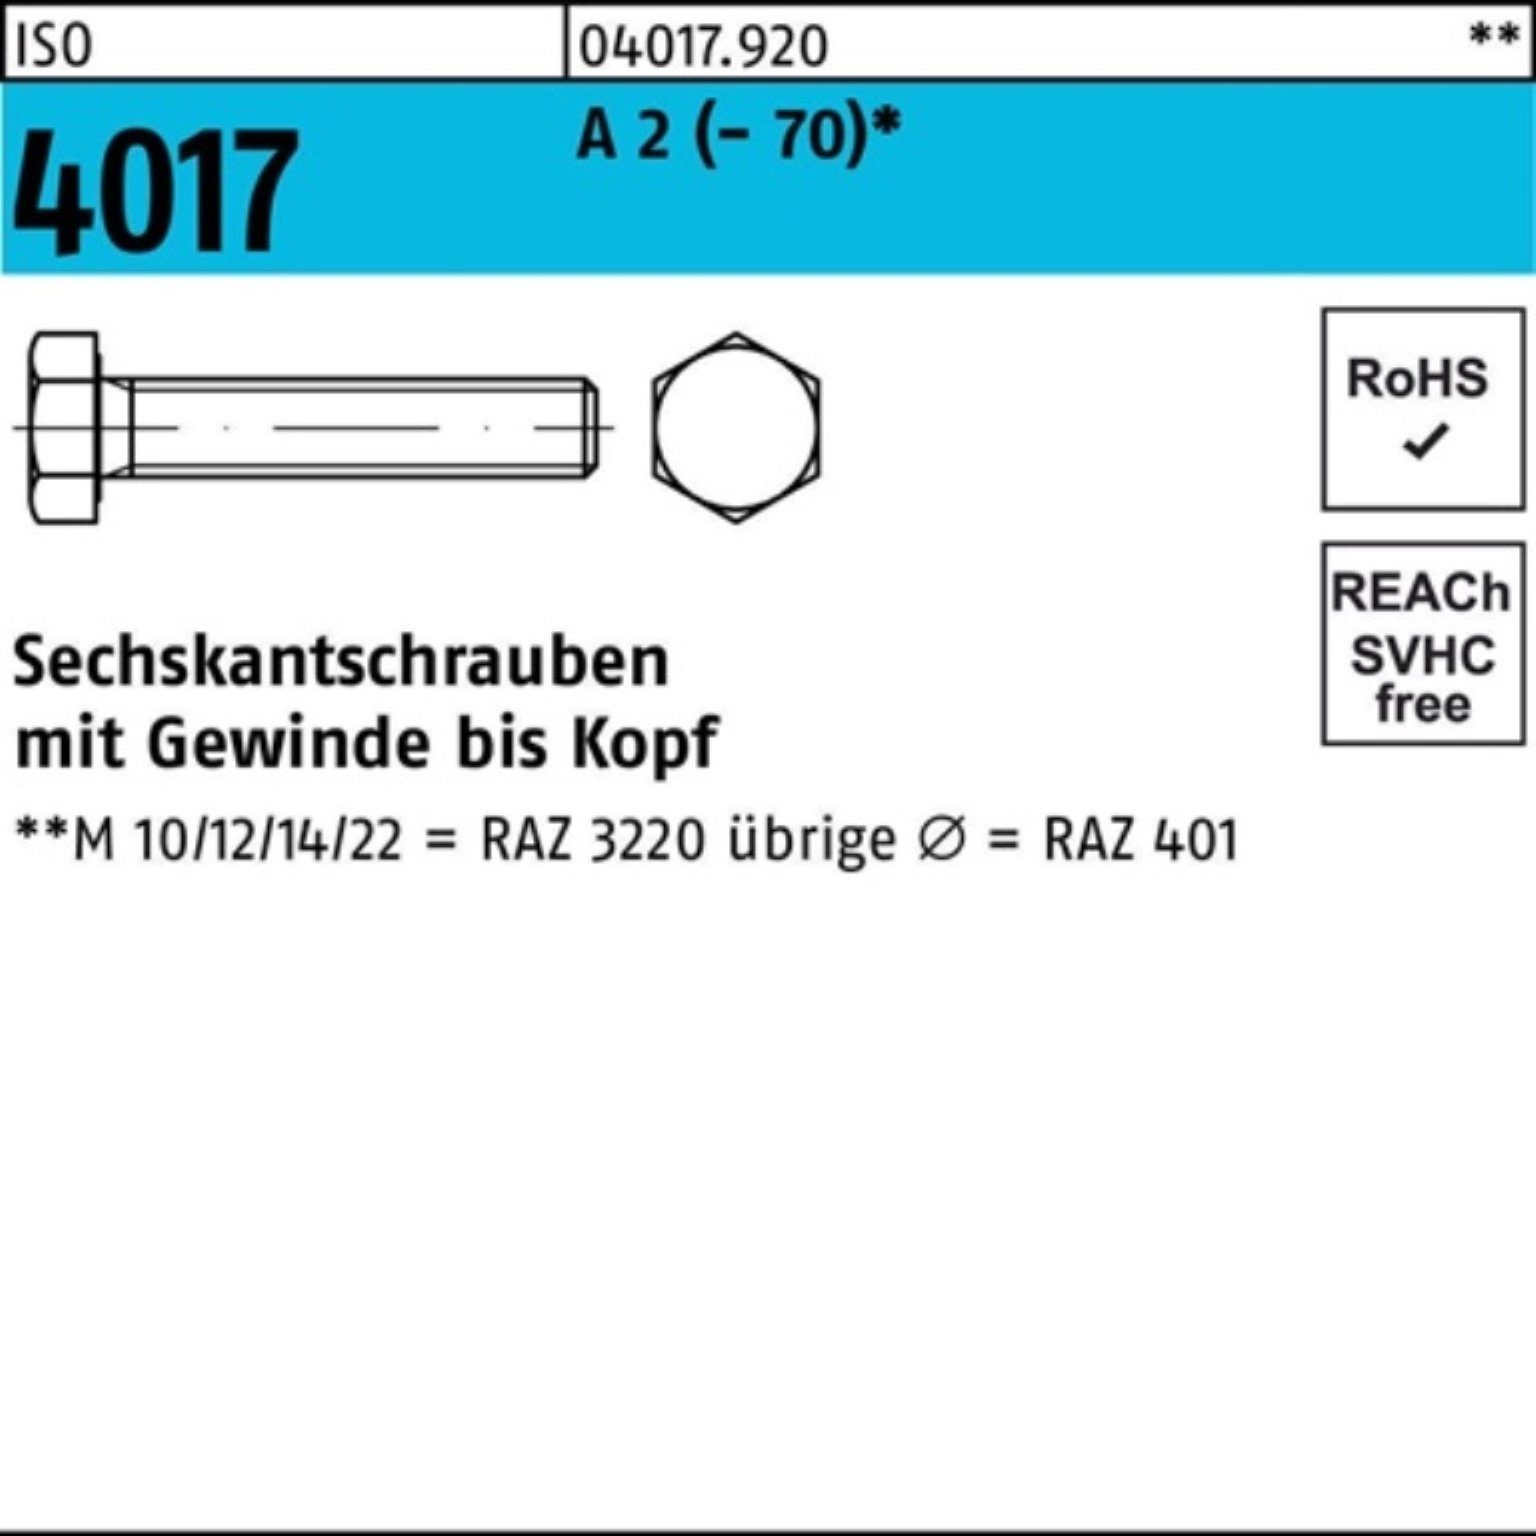 Bufab Sechskantschraube 100er A (70) ISO 4017 M8x Stück Sechskantschraube VG 100 2 25 Pack